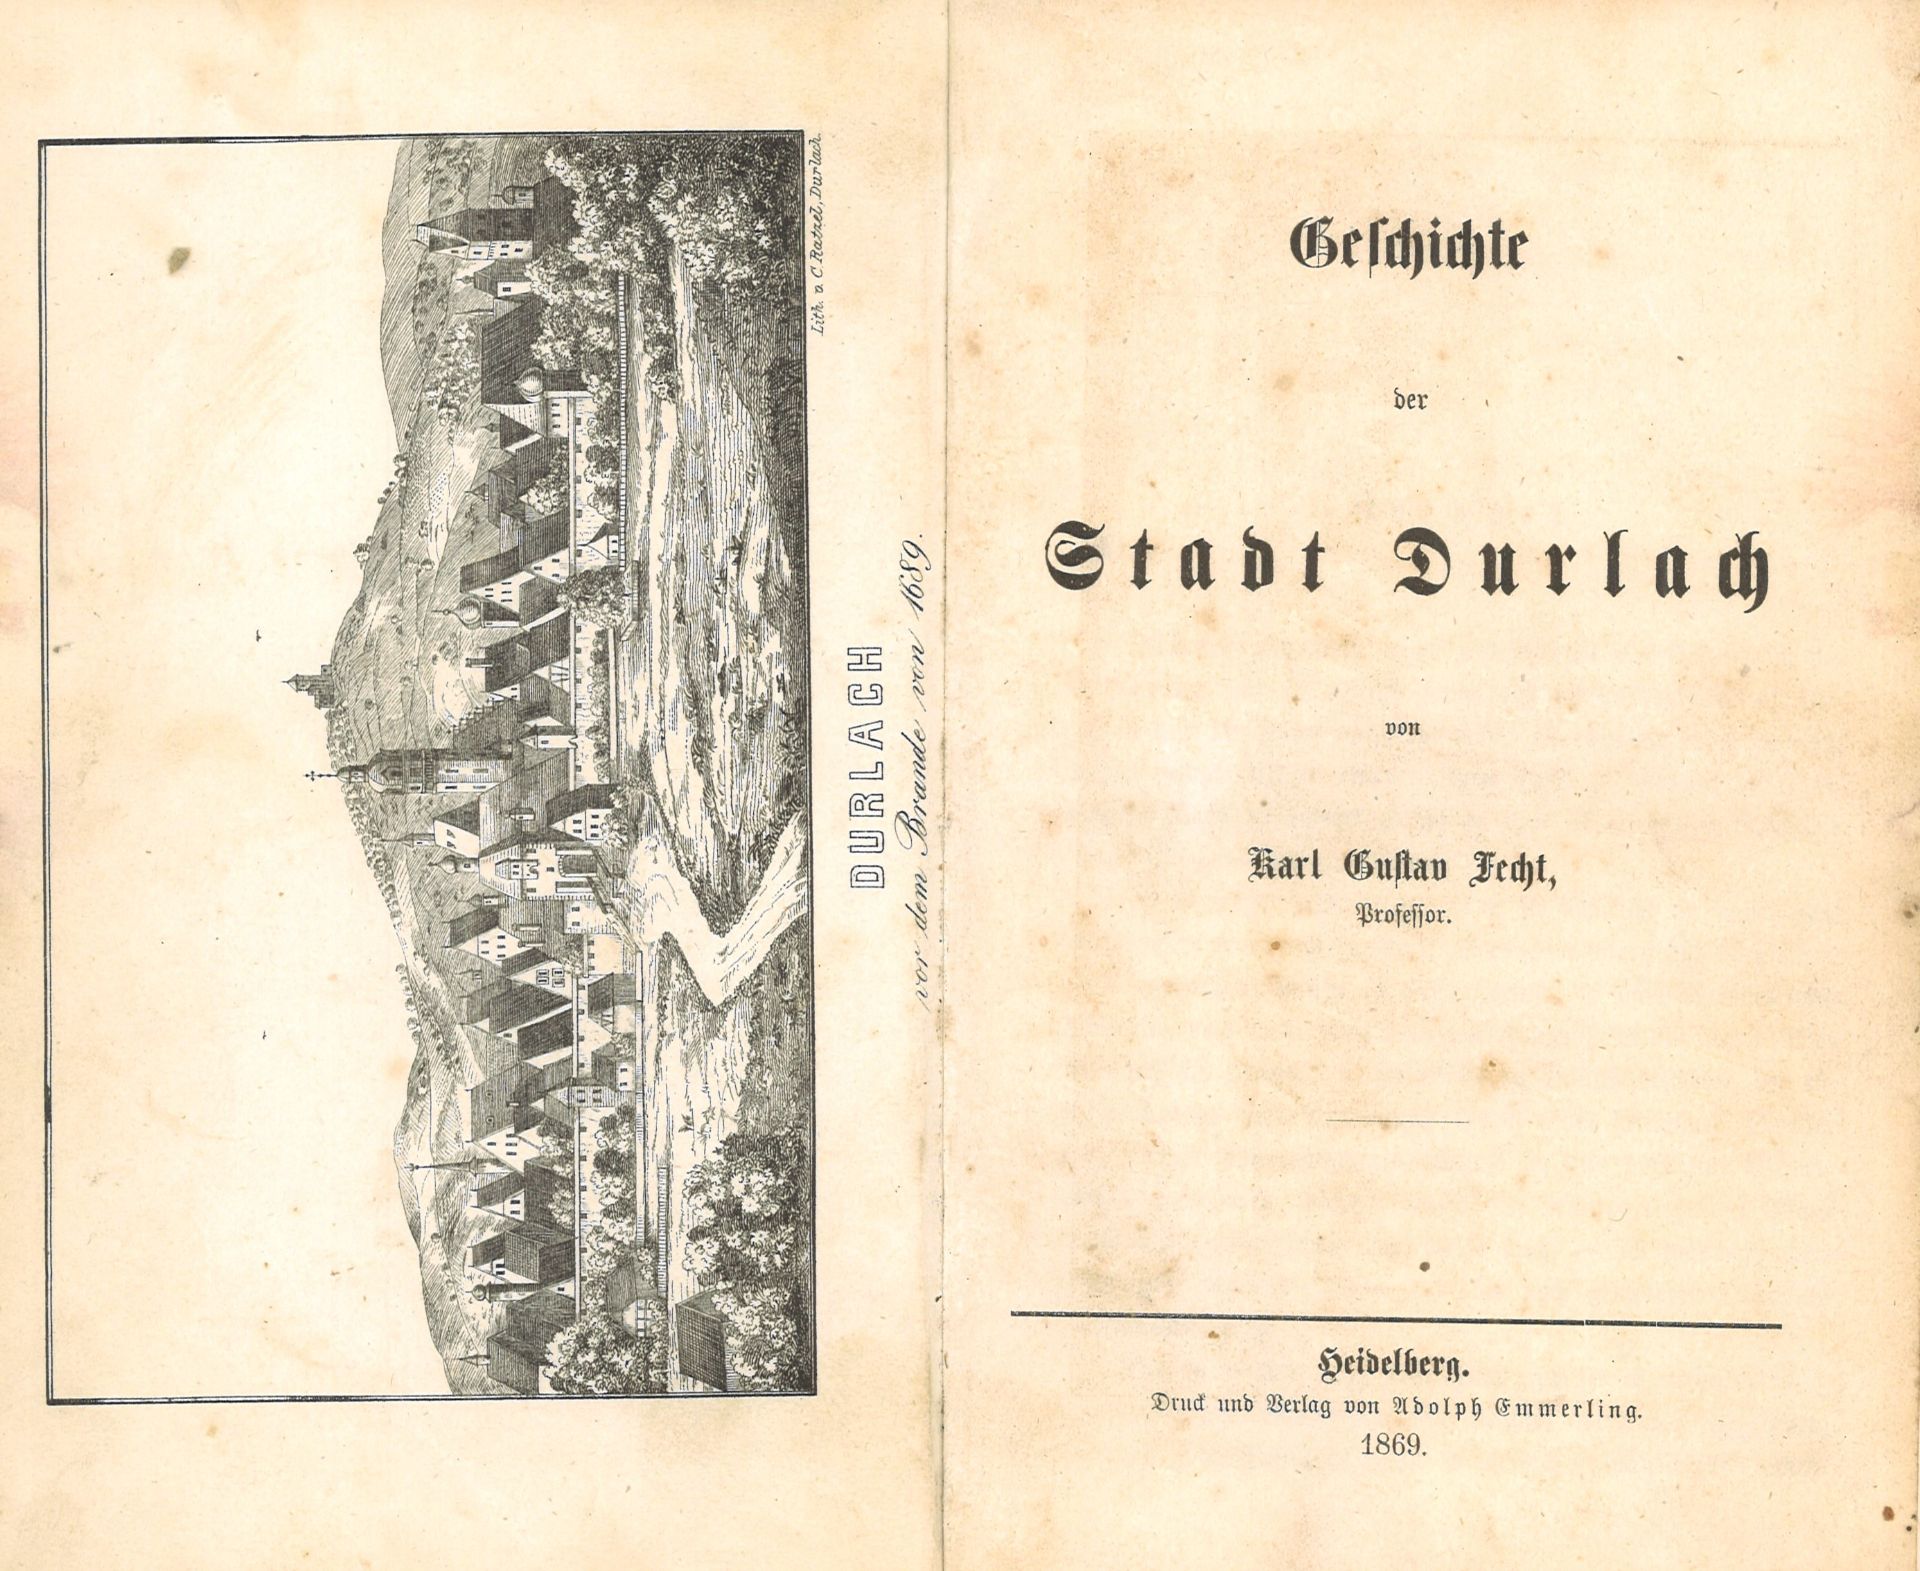 Geschichte der Stadt Durlach. Fecht, Carl Gustav, Verlag: Heidelberg, Druck und Verlag von Adolph